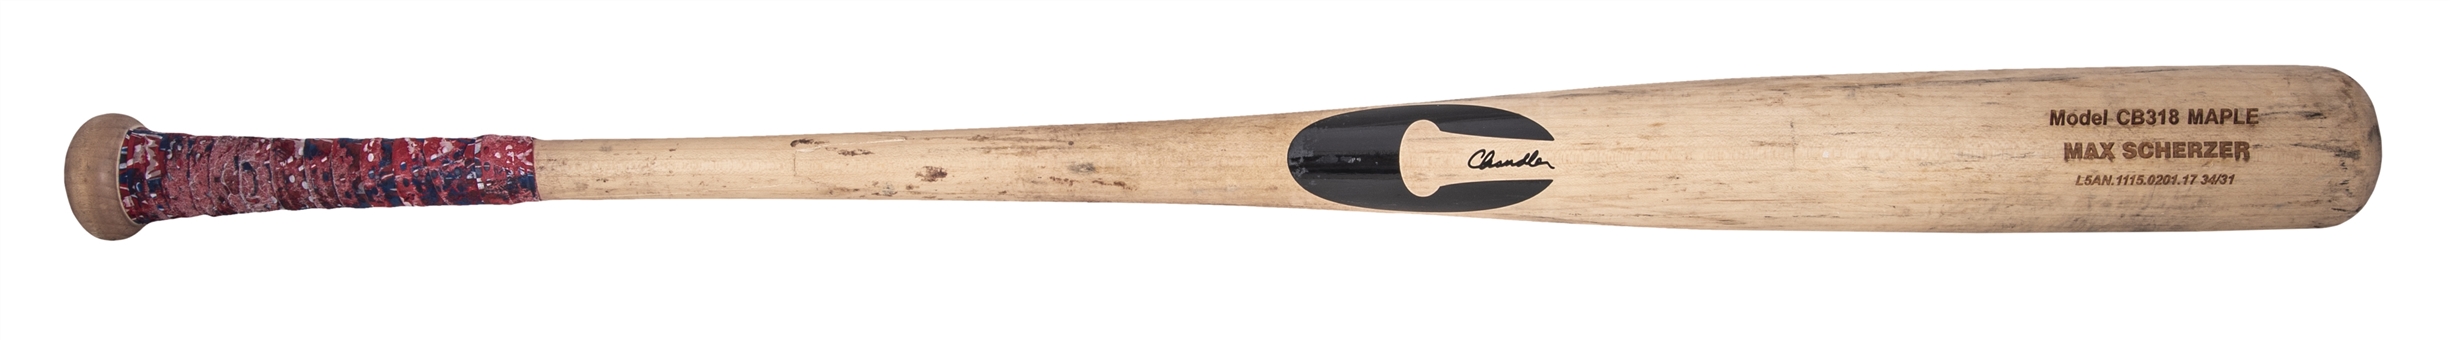 2017 Max Scherzer Game Used Chandler CB318 Model Bat (PSA/DNA GU 9)